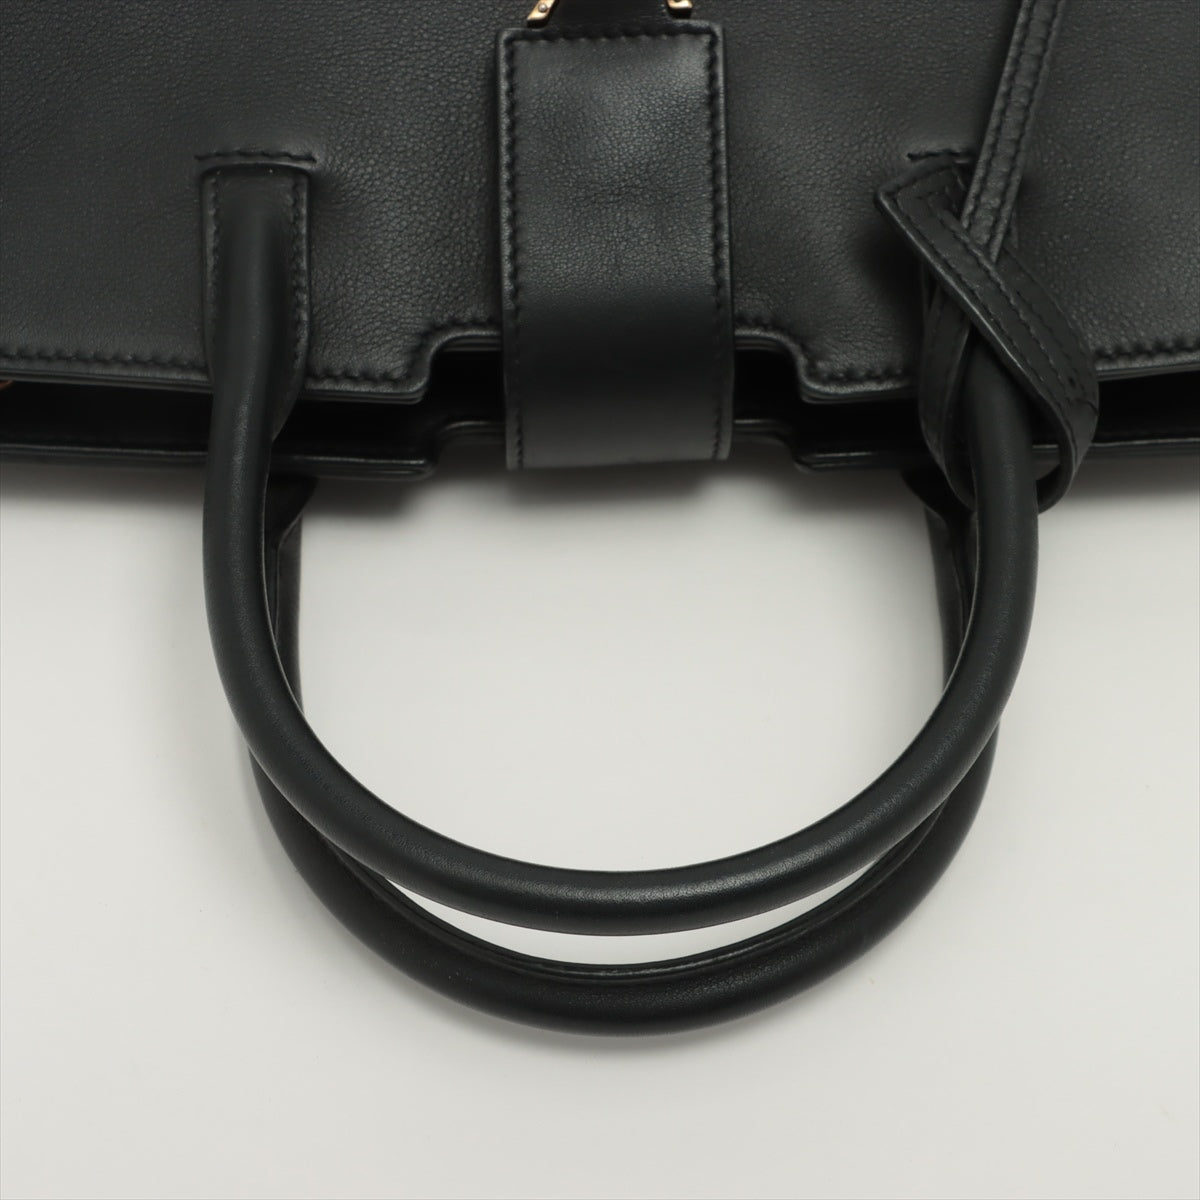 Saint Laurent Paris Downtown Cabas Leather & Suede 2 Way Handbag Black 436834